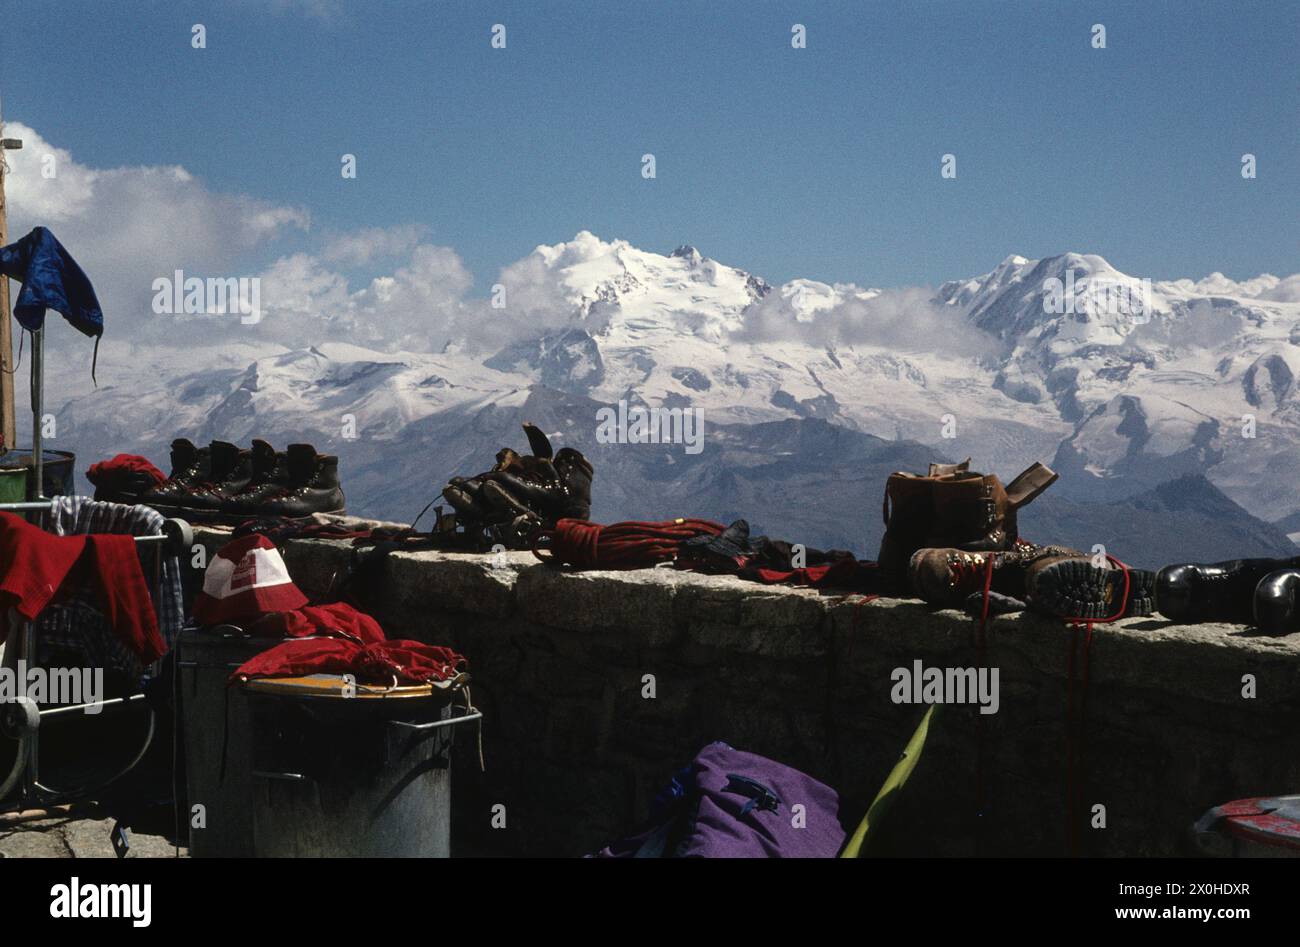 Gli alpinisti hanno lasciato i loro vestiti e scarpe, che si sono bagnati dal loro tour in alta quota, al sole per asciugare. [traduzione automatica] Foto Stock